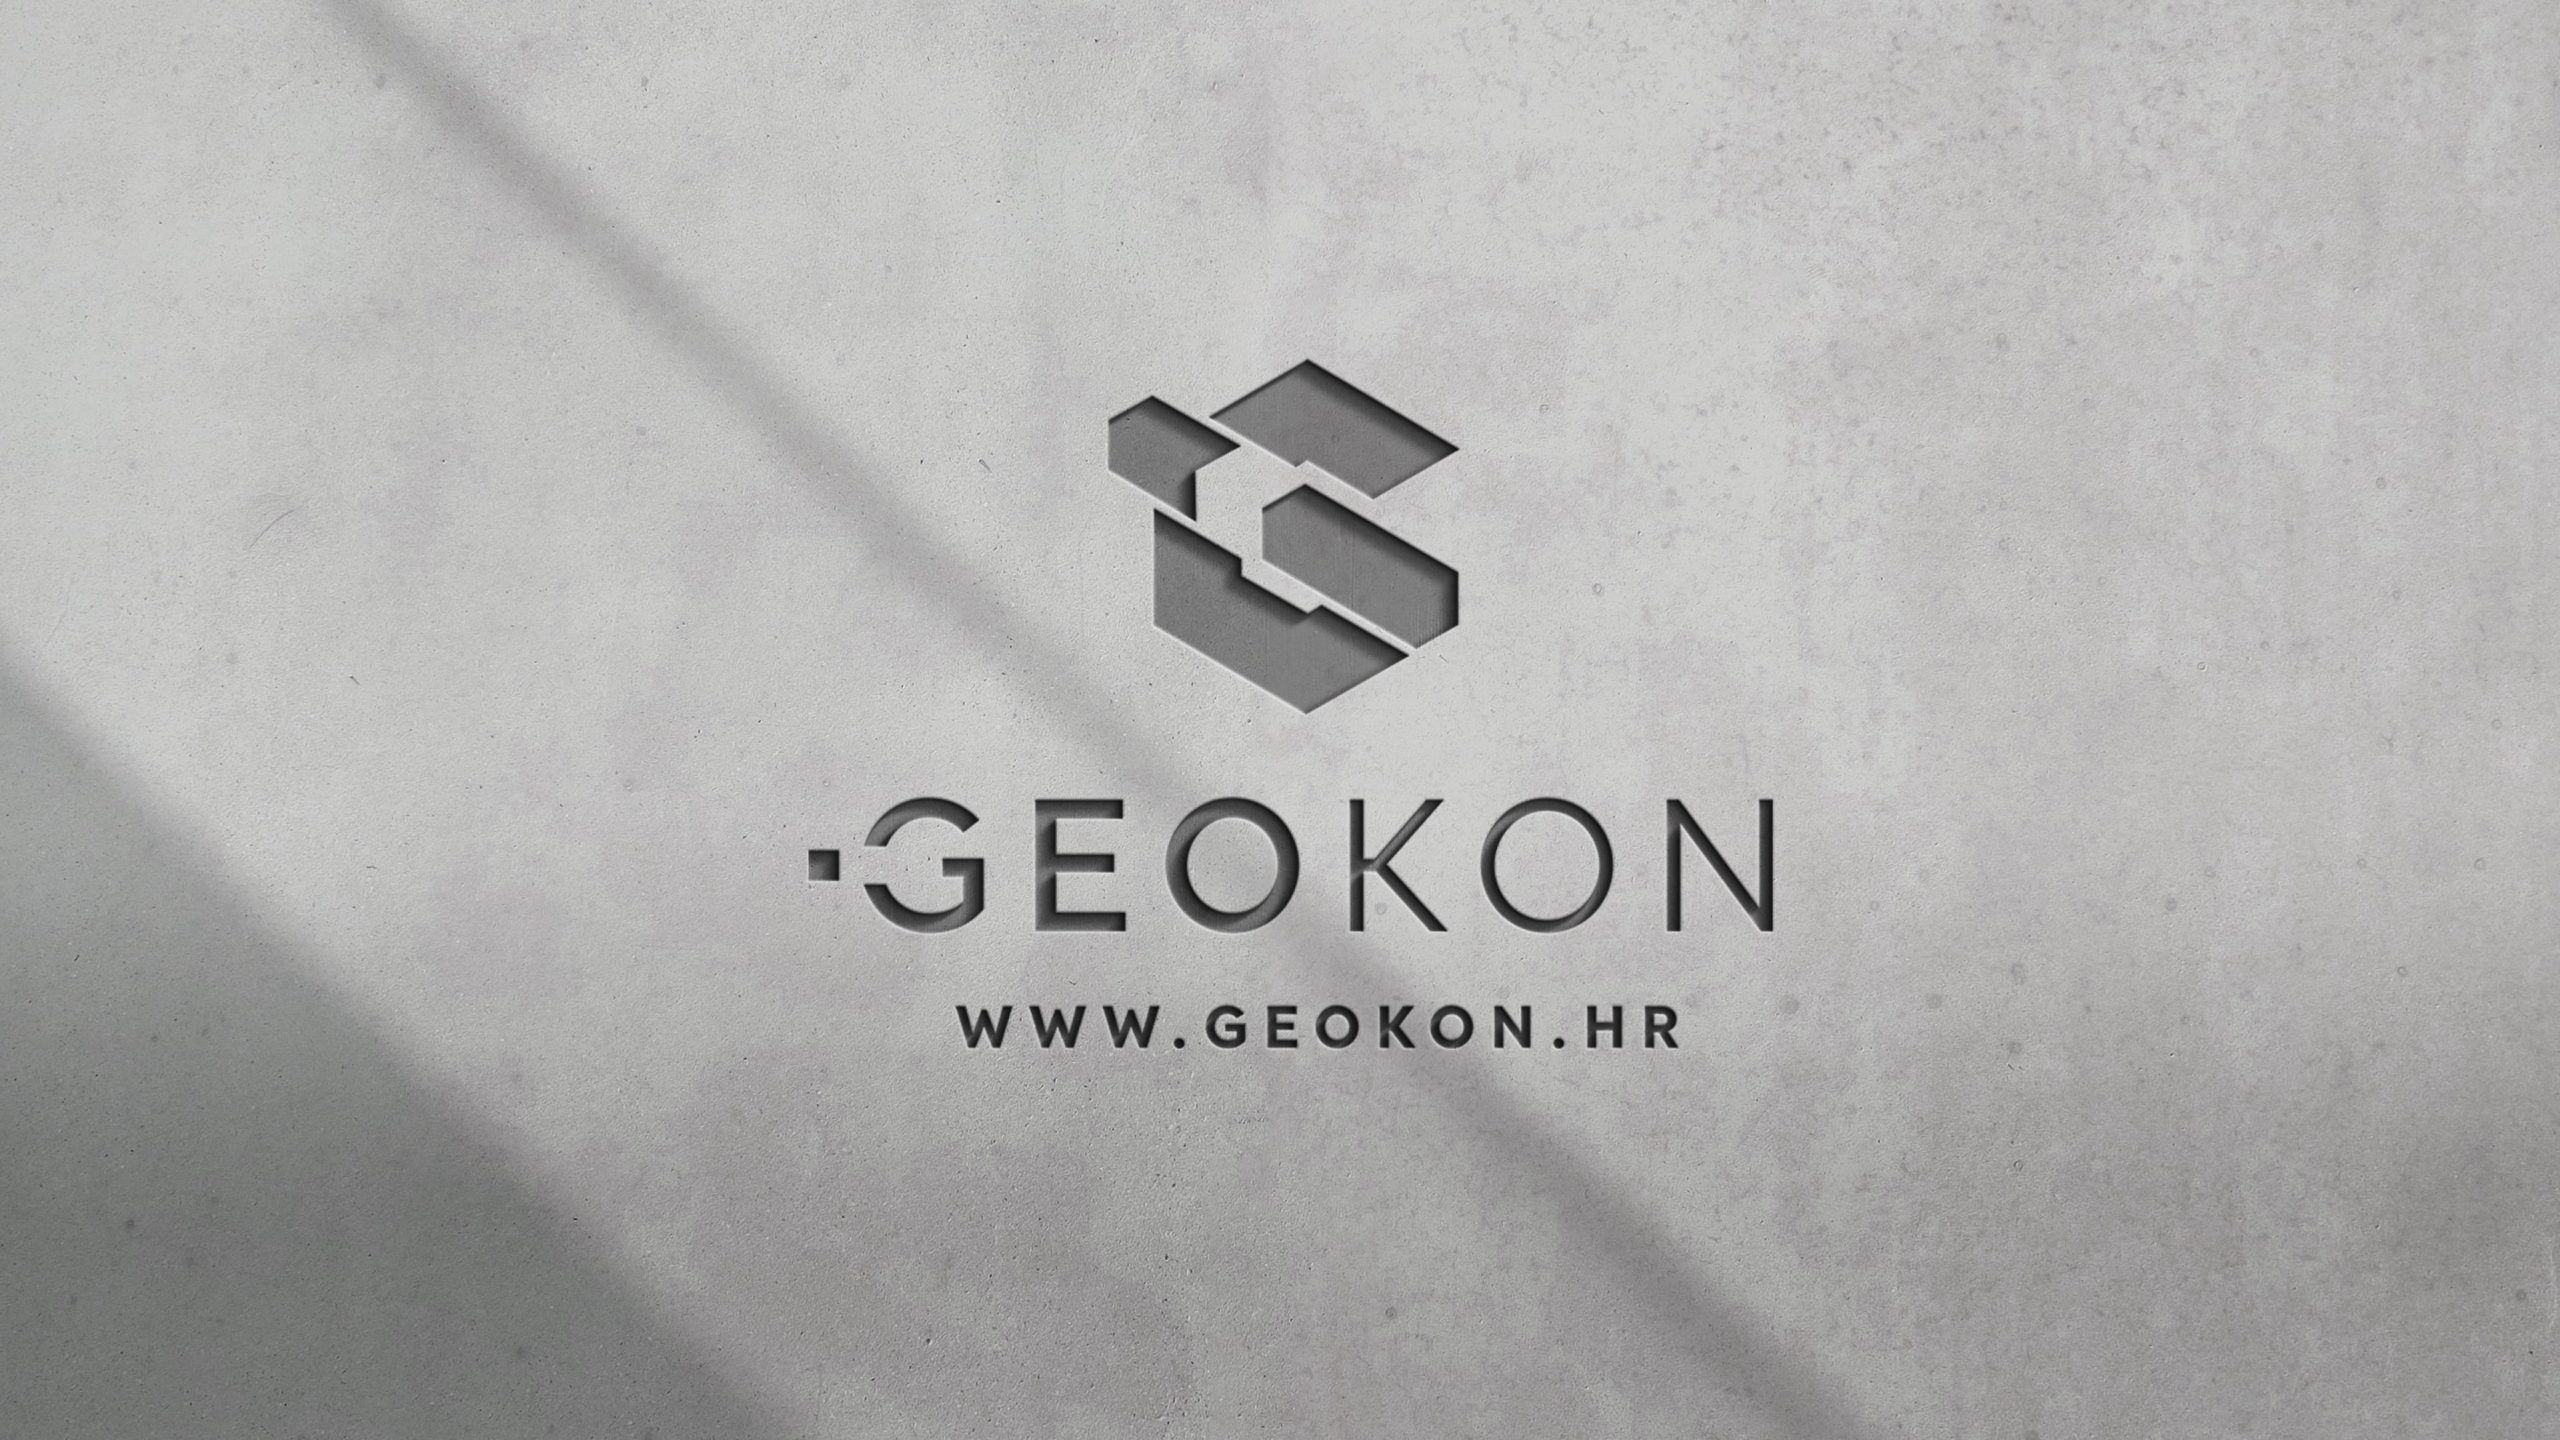 Geokon